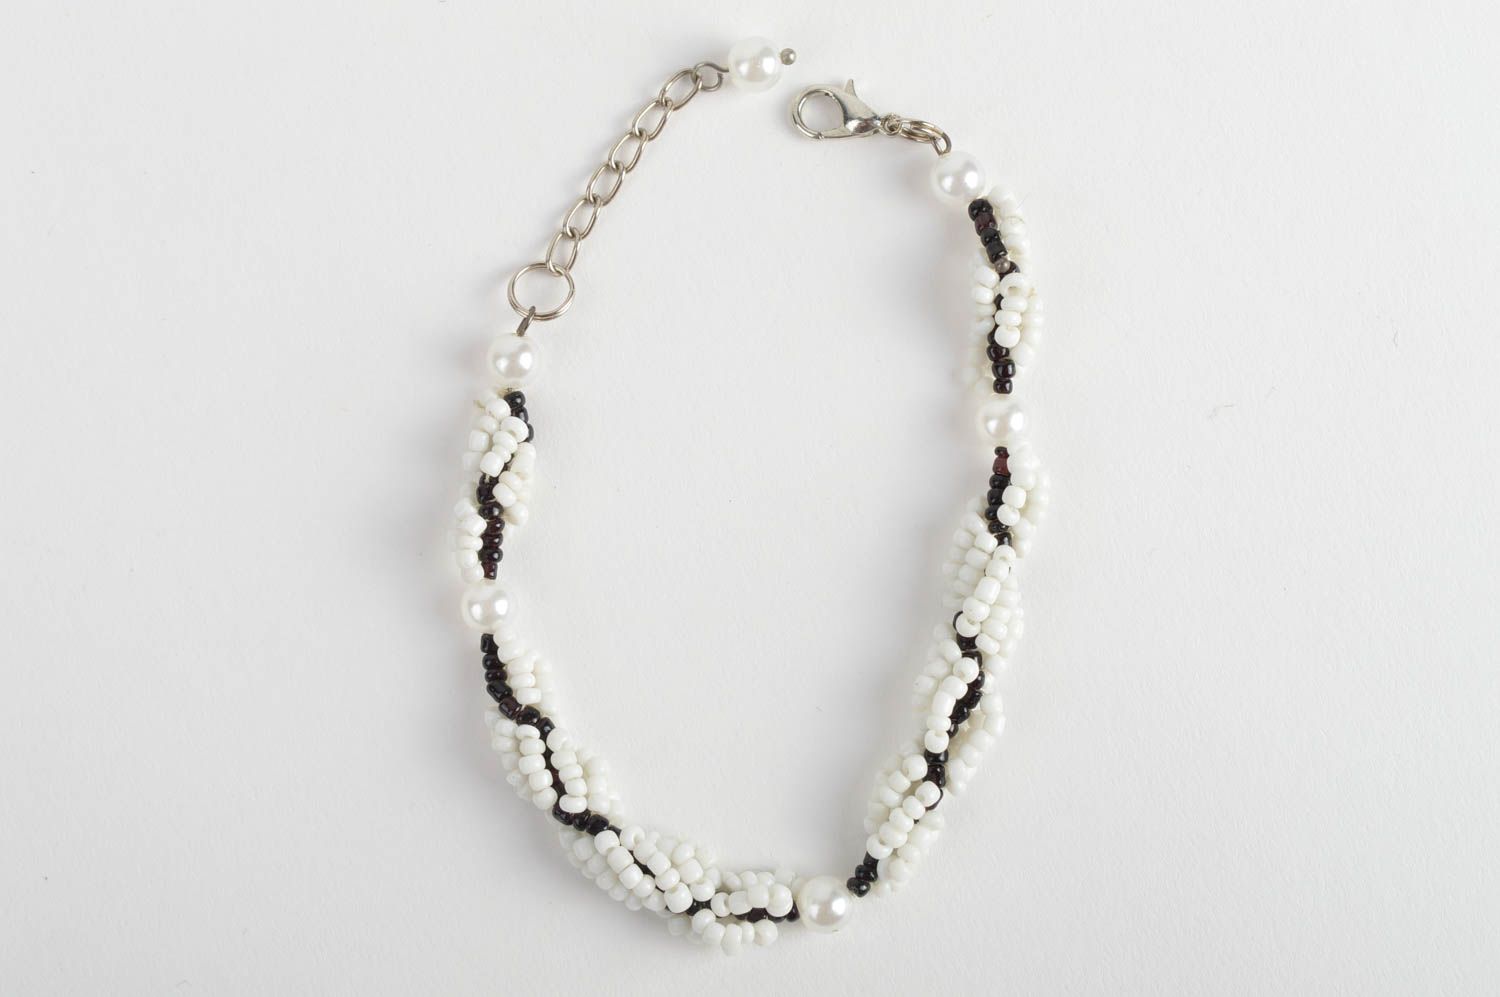 Handmade designer black and white bead woven wrist bracelet for women photo 2